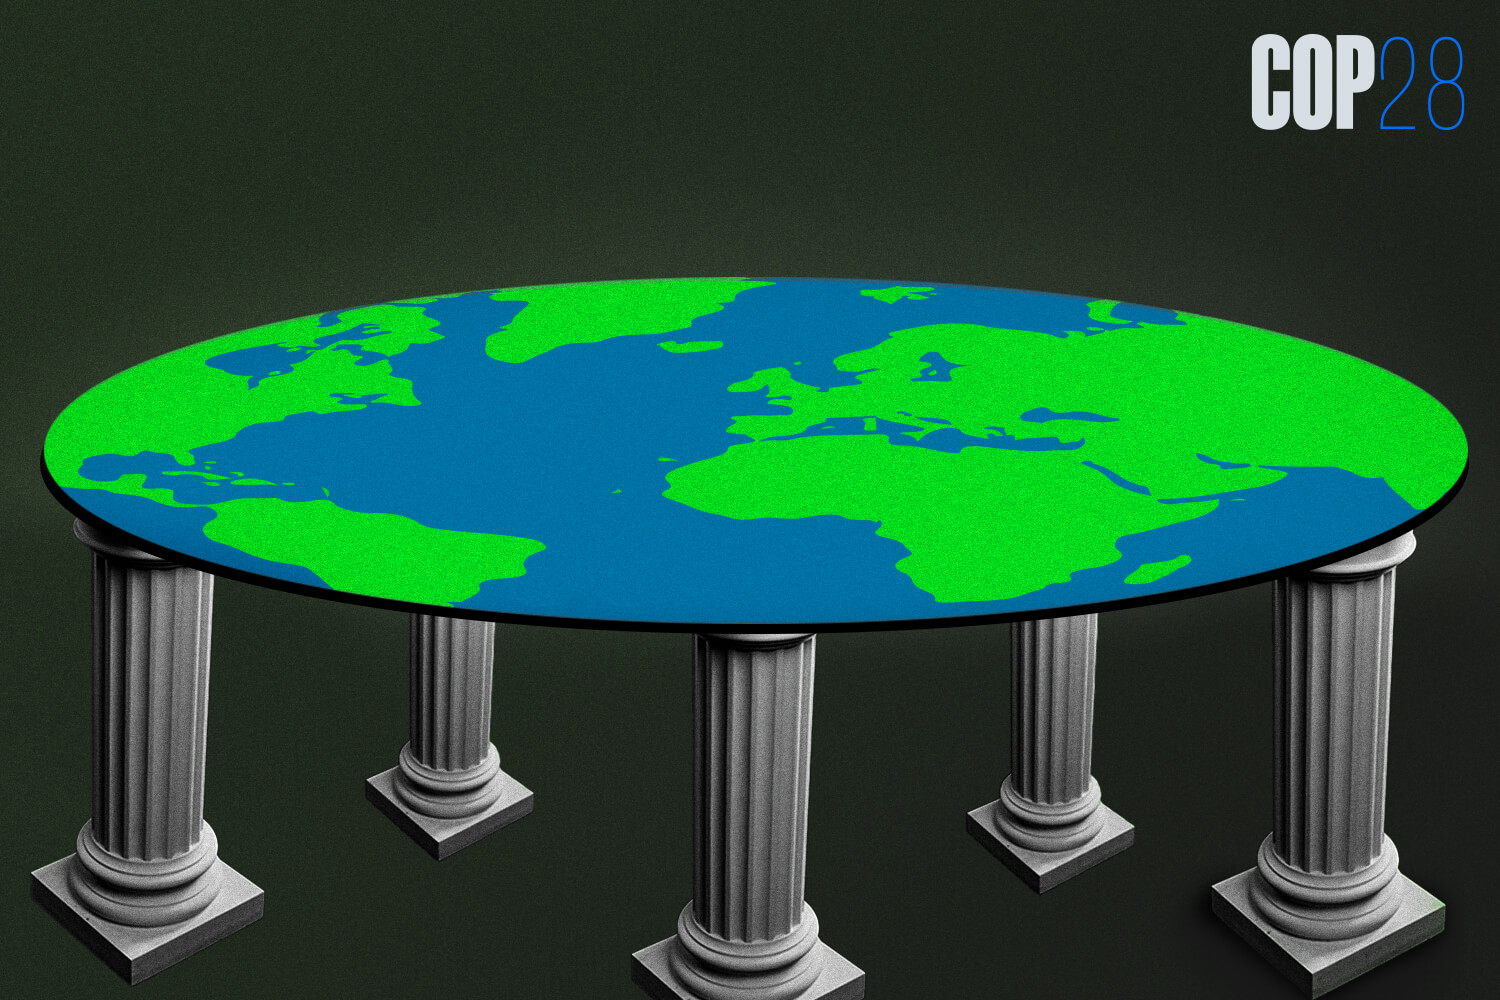 White pillars hold up the Earth, symbolizing international banking.